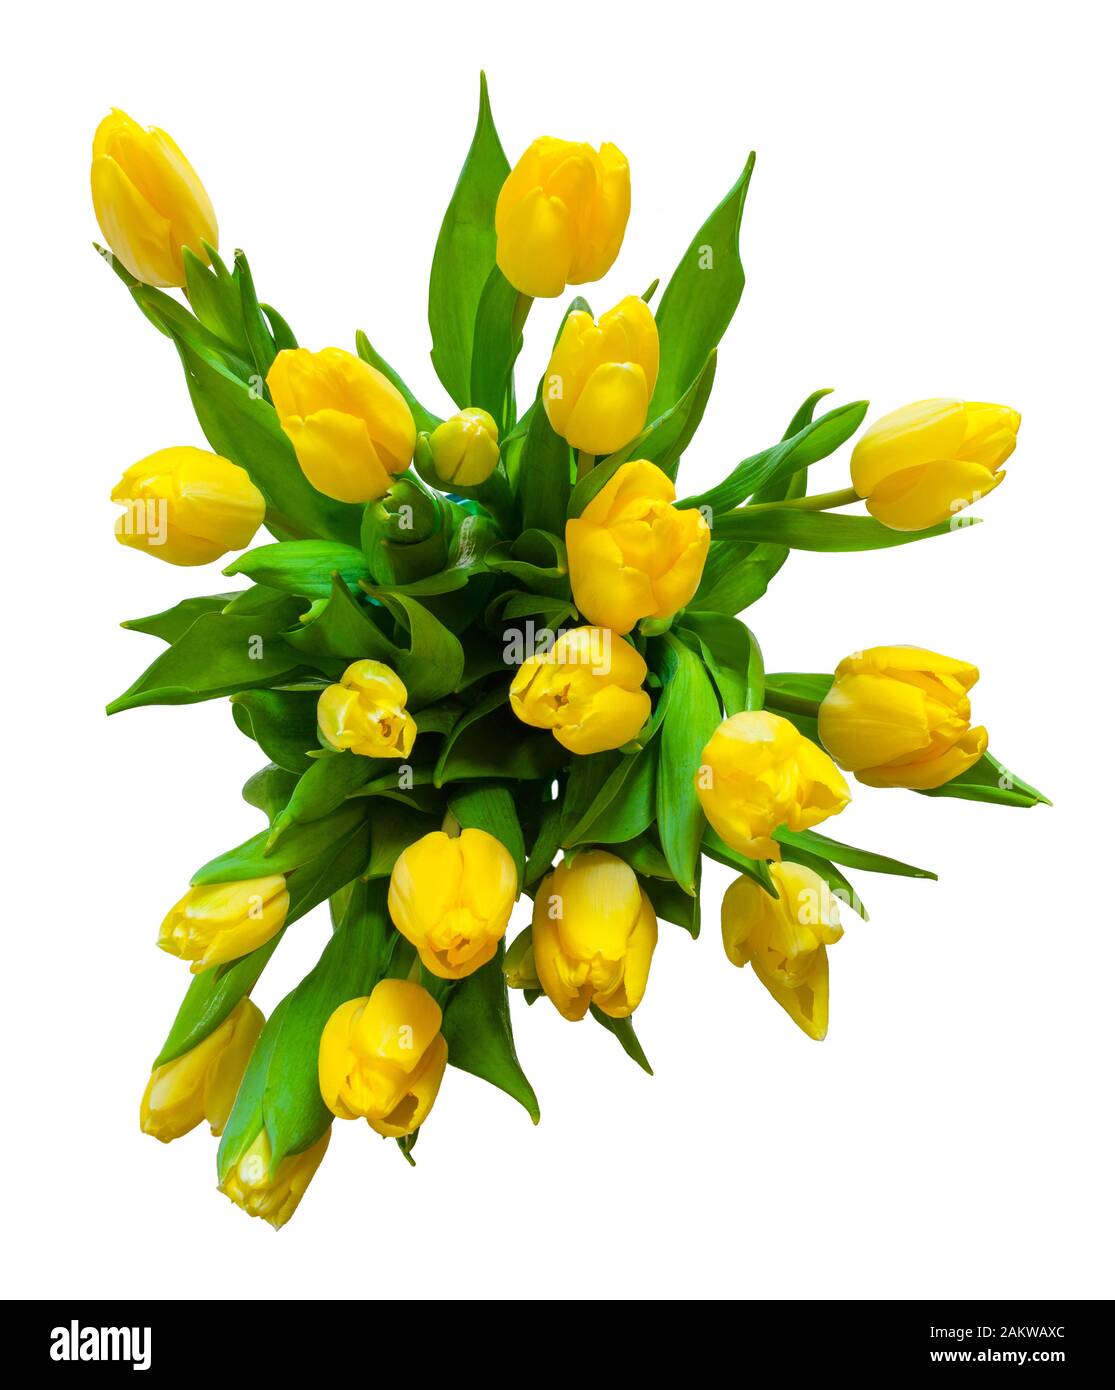 vue de dessus du bouquet de tulipes jaunes isolées sur fond blanc Banque D'Images